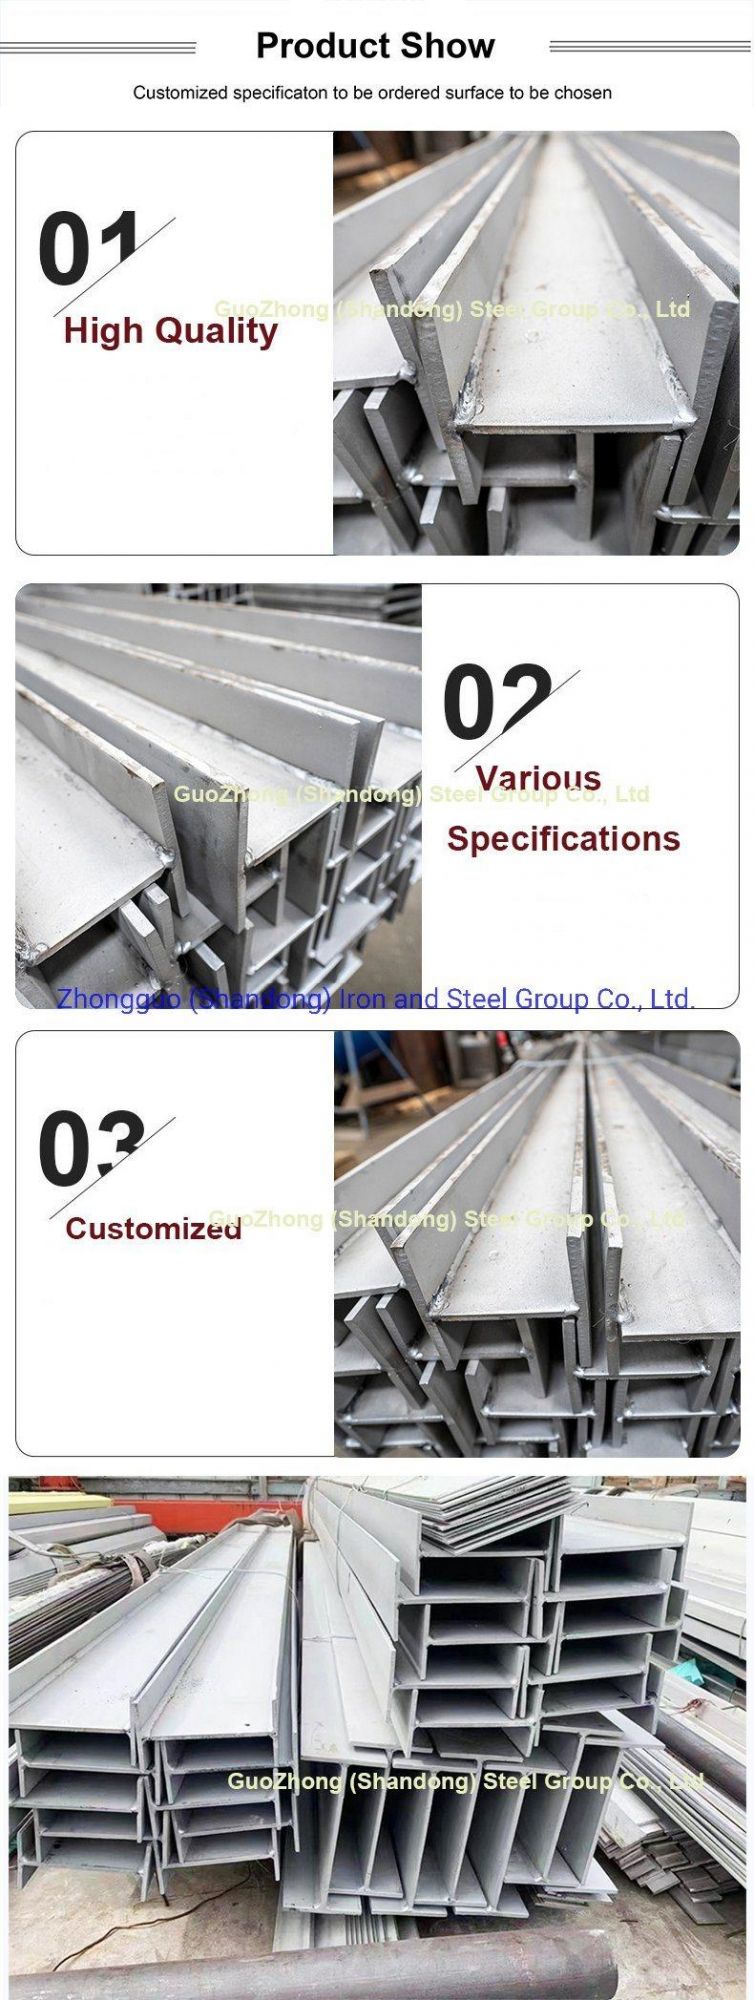 Factory Price Steel Beam Guozhong 316 Stainless Steel I Beam/H Beam